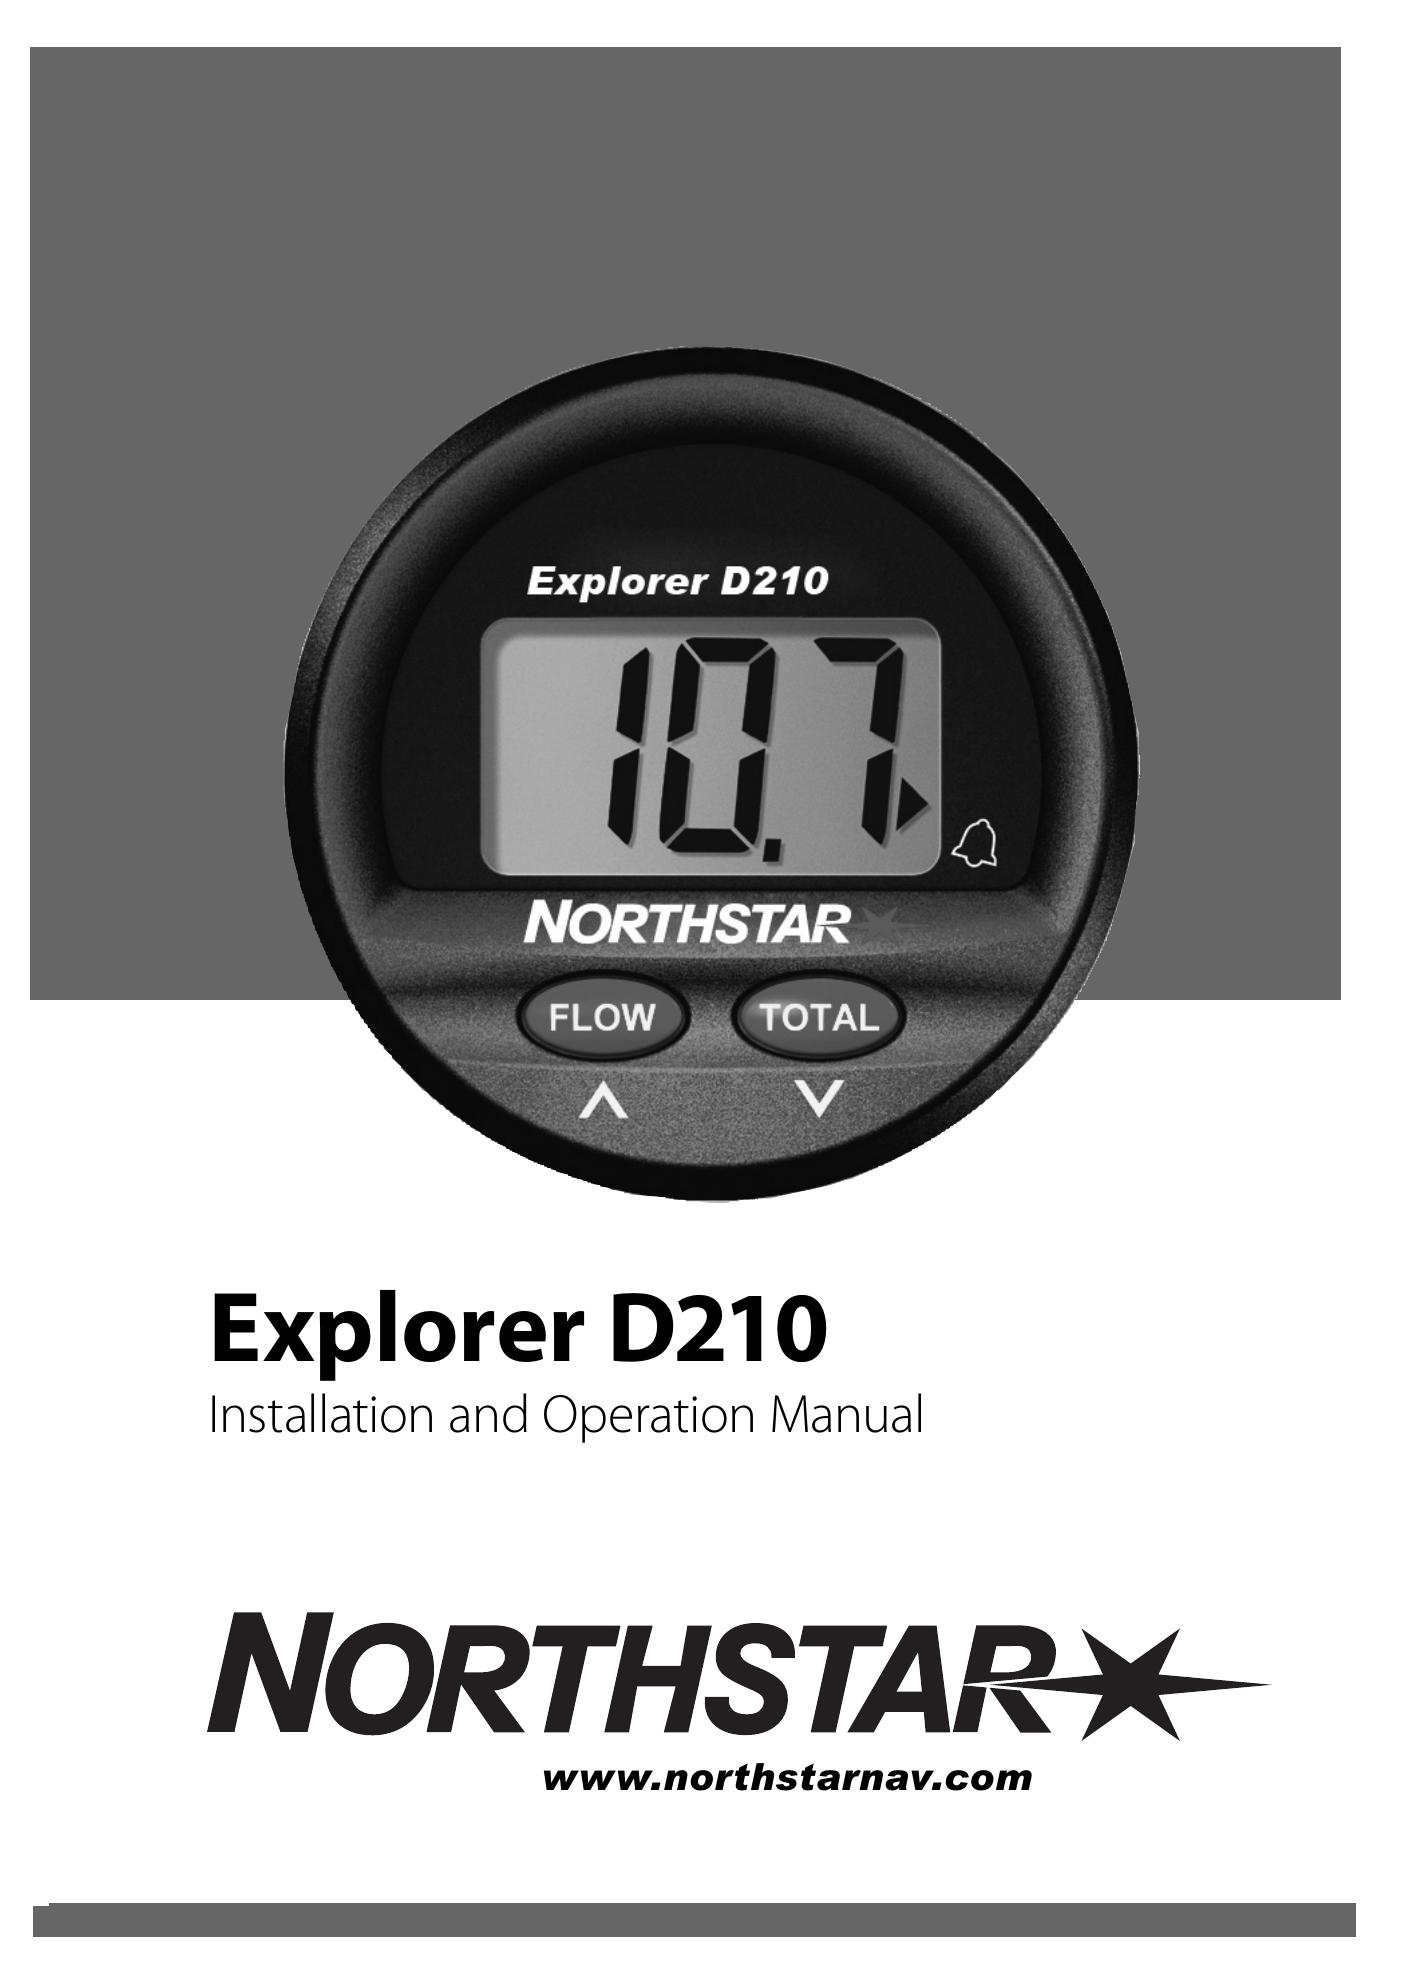 NorthStar Navigation D210 Clock Radio User Manual